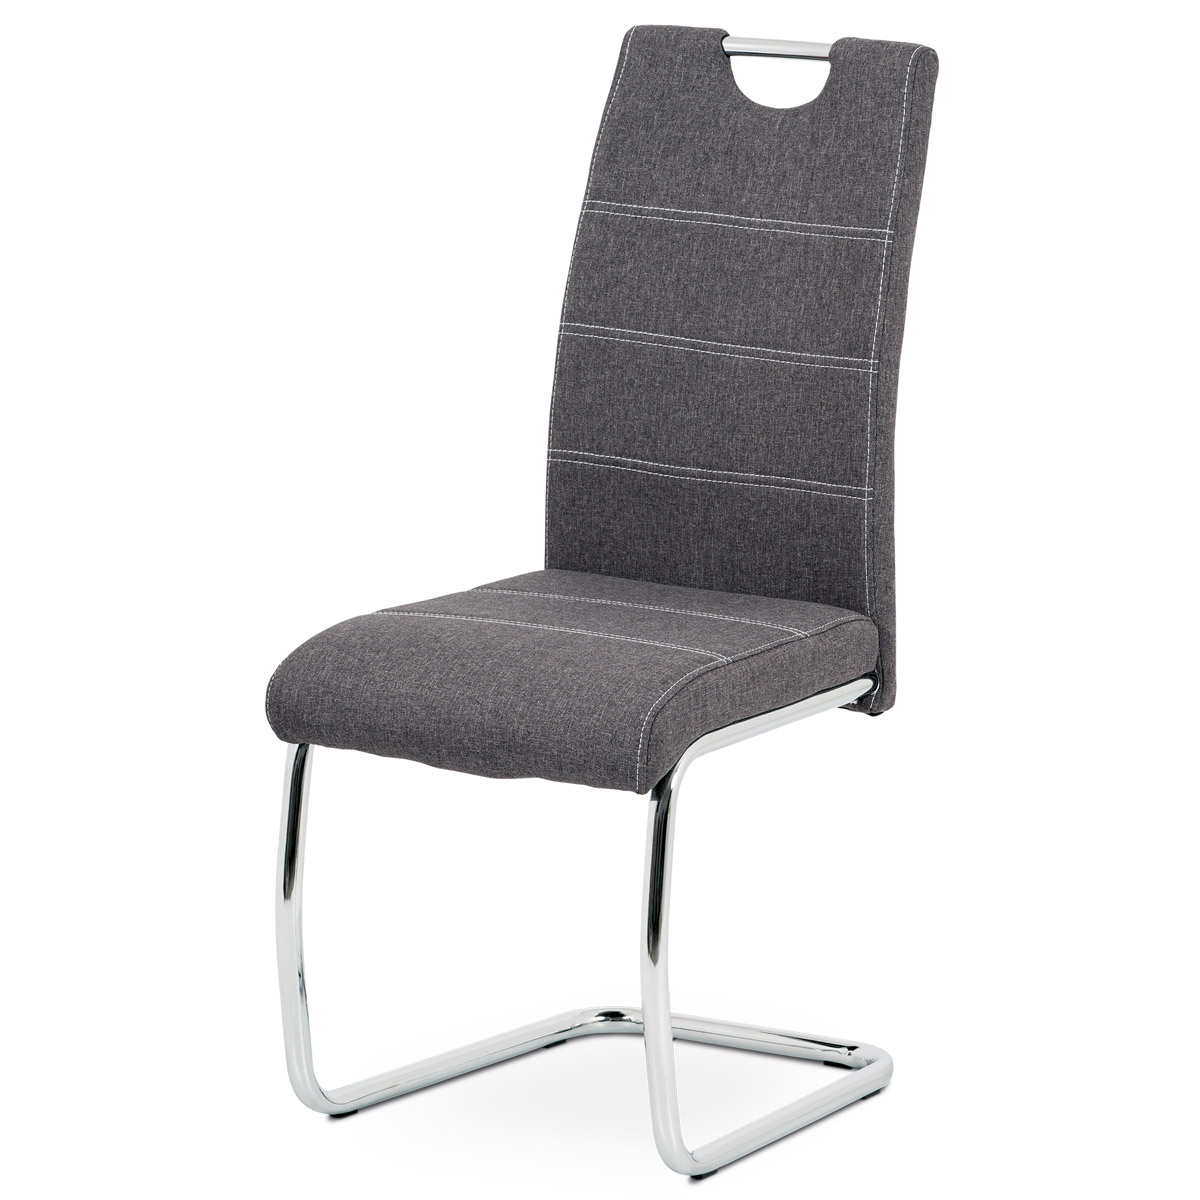 Jídelní židle, potah šedá látka, bílé prošití, kovová chromovaná pohupová podnož